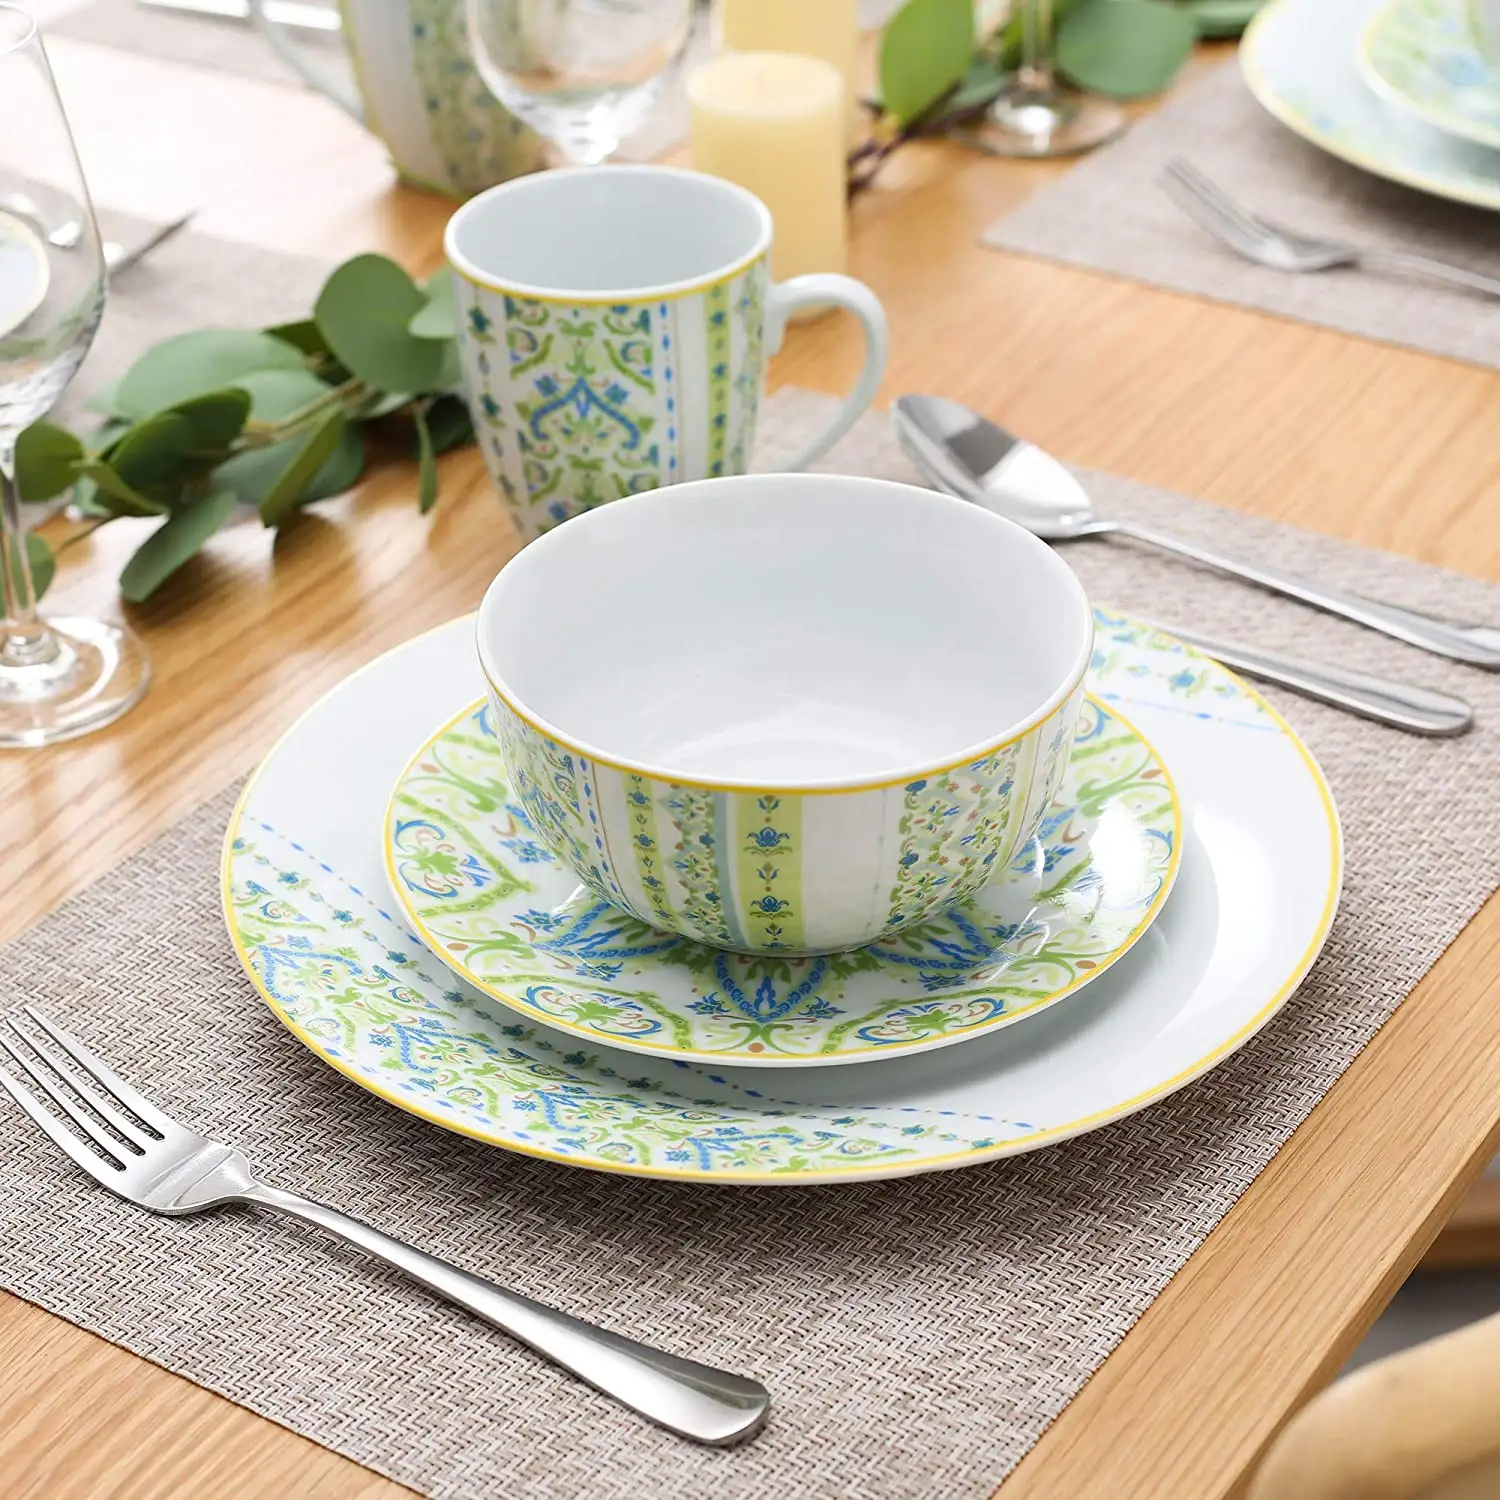 Europe porcelain 12pcs luxury fine porcelain dinnerware,royal porcelain dinnerware with full design